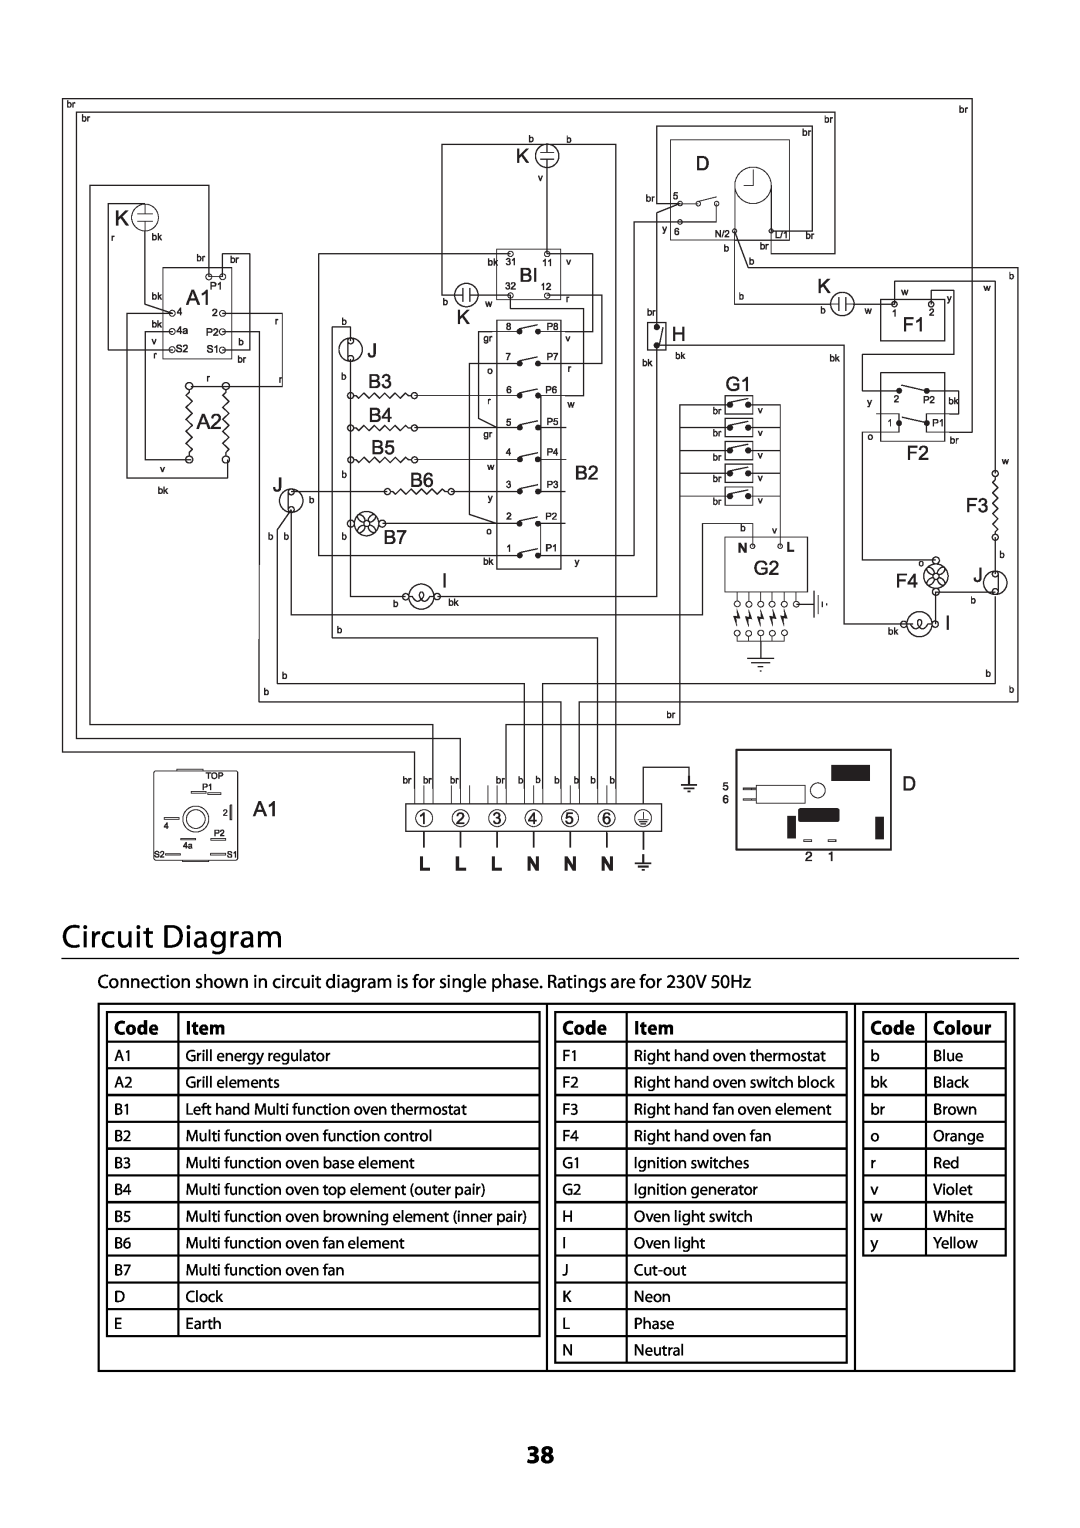 Rangemaster U109300 - 01 manual Circuit Diagram, Code, Colour 